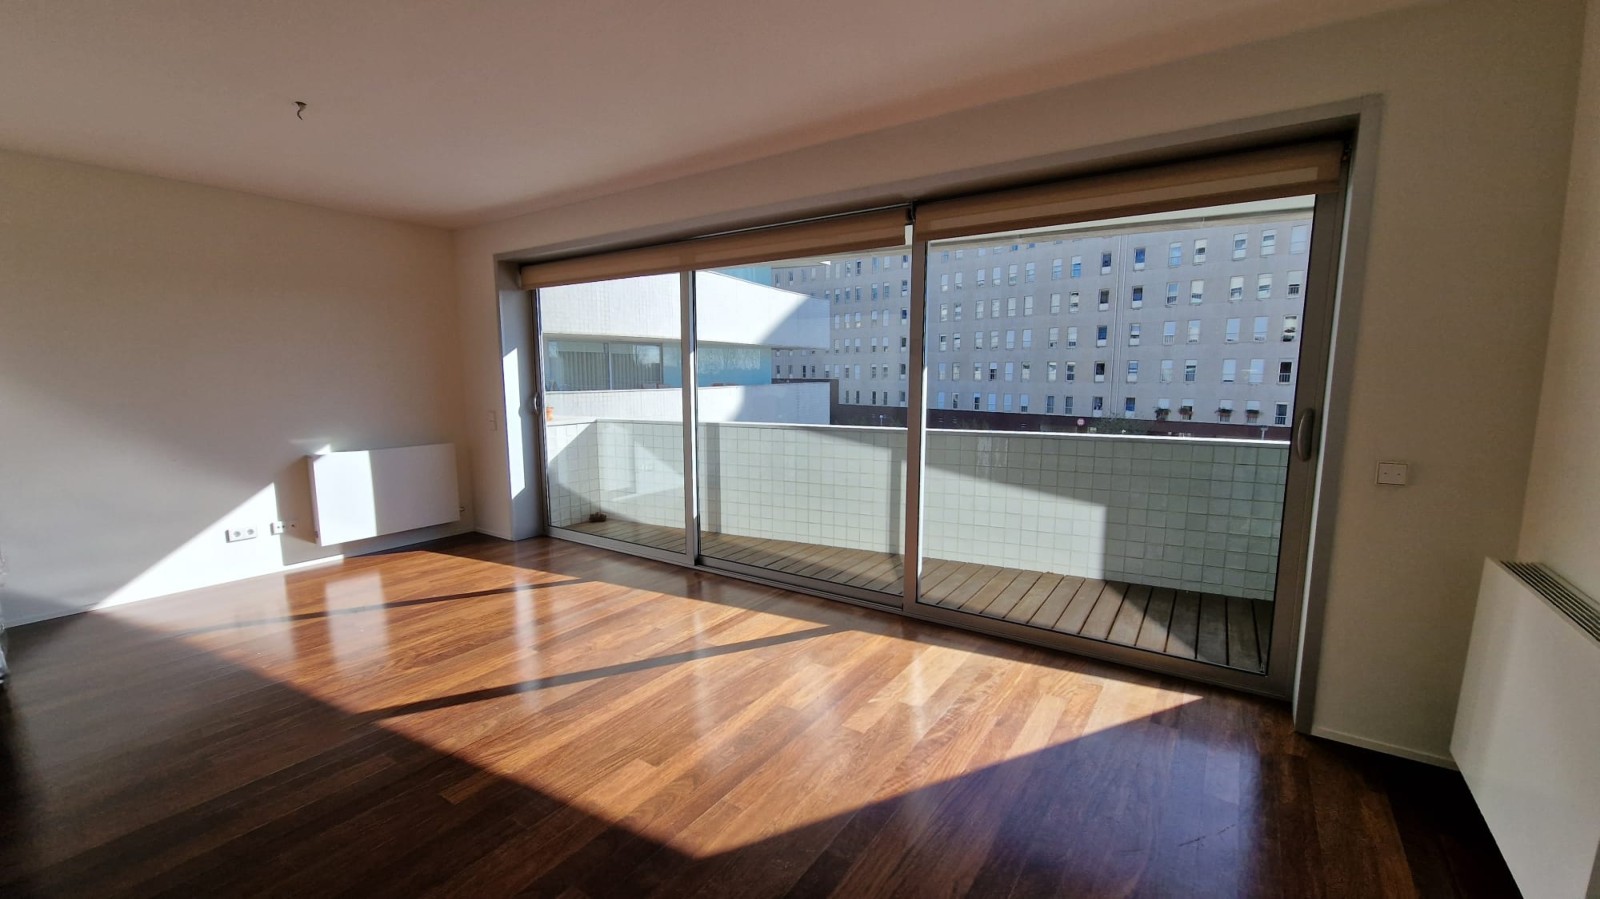 Duplex-Wohnung mit Balkon, zu verkaufen, in Lordelo do Ouro, Porto, Portugal_219123